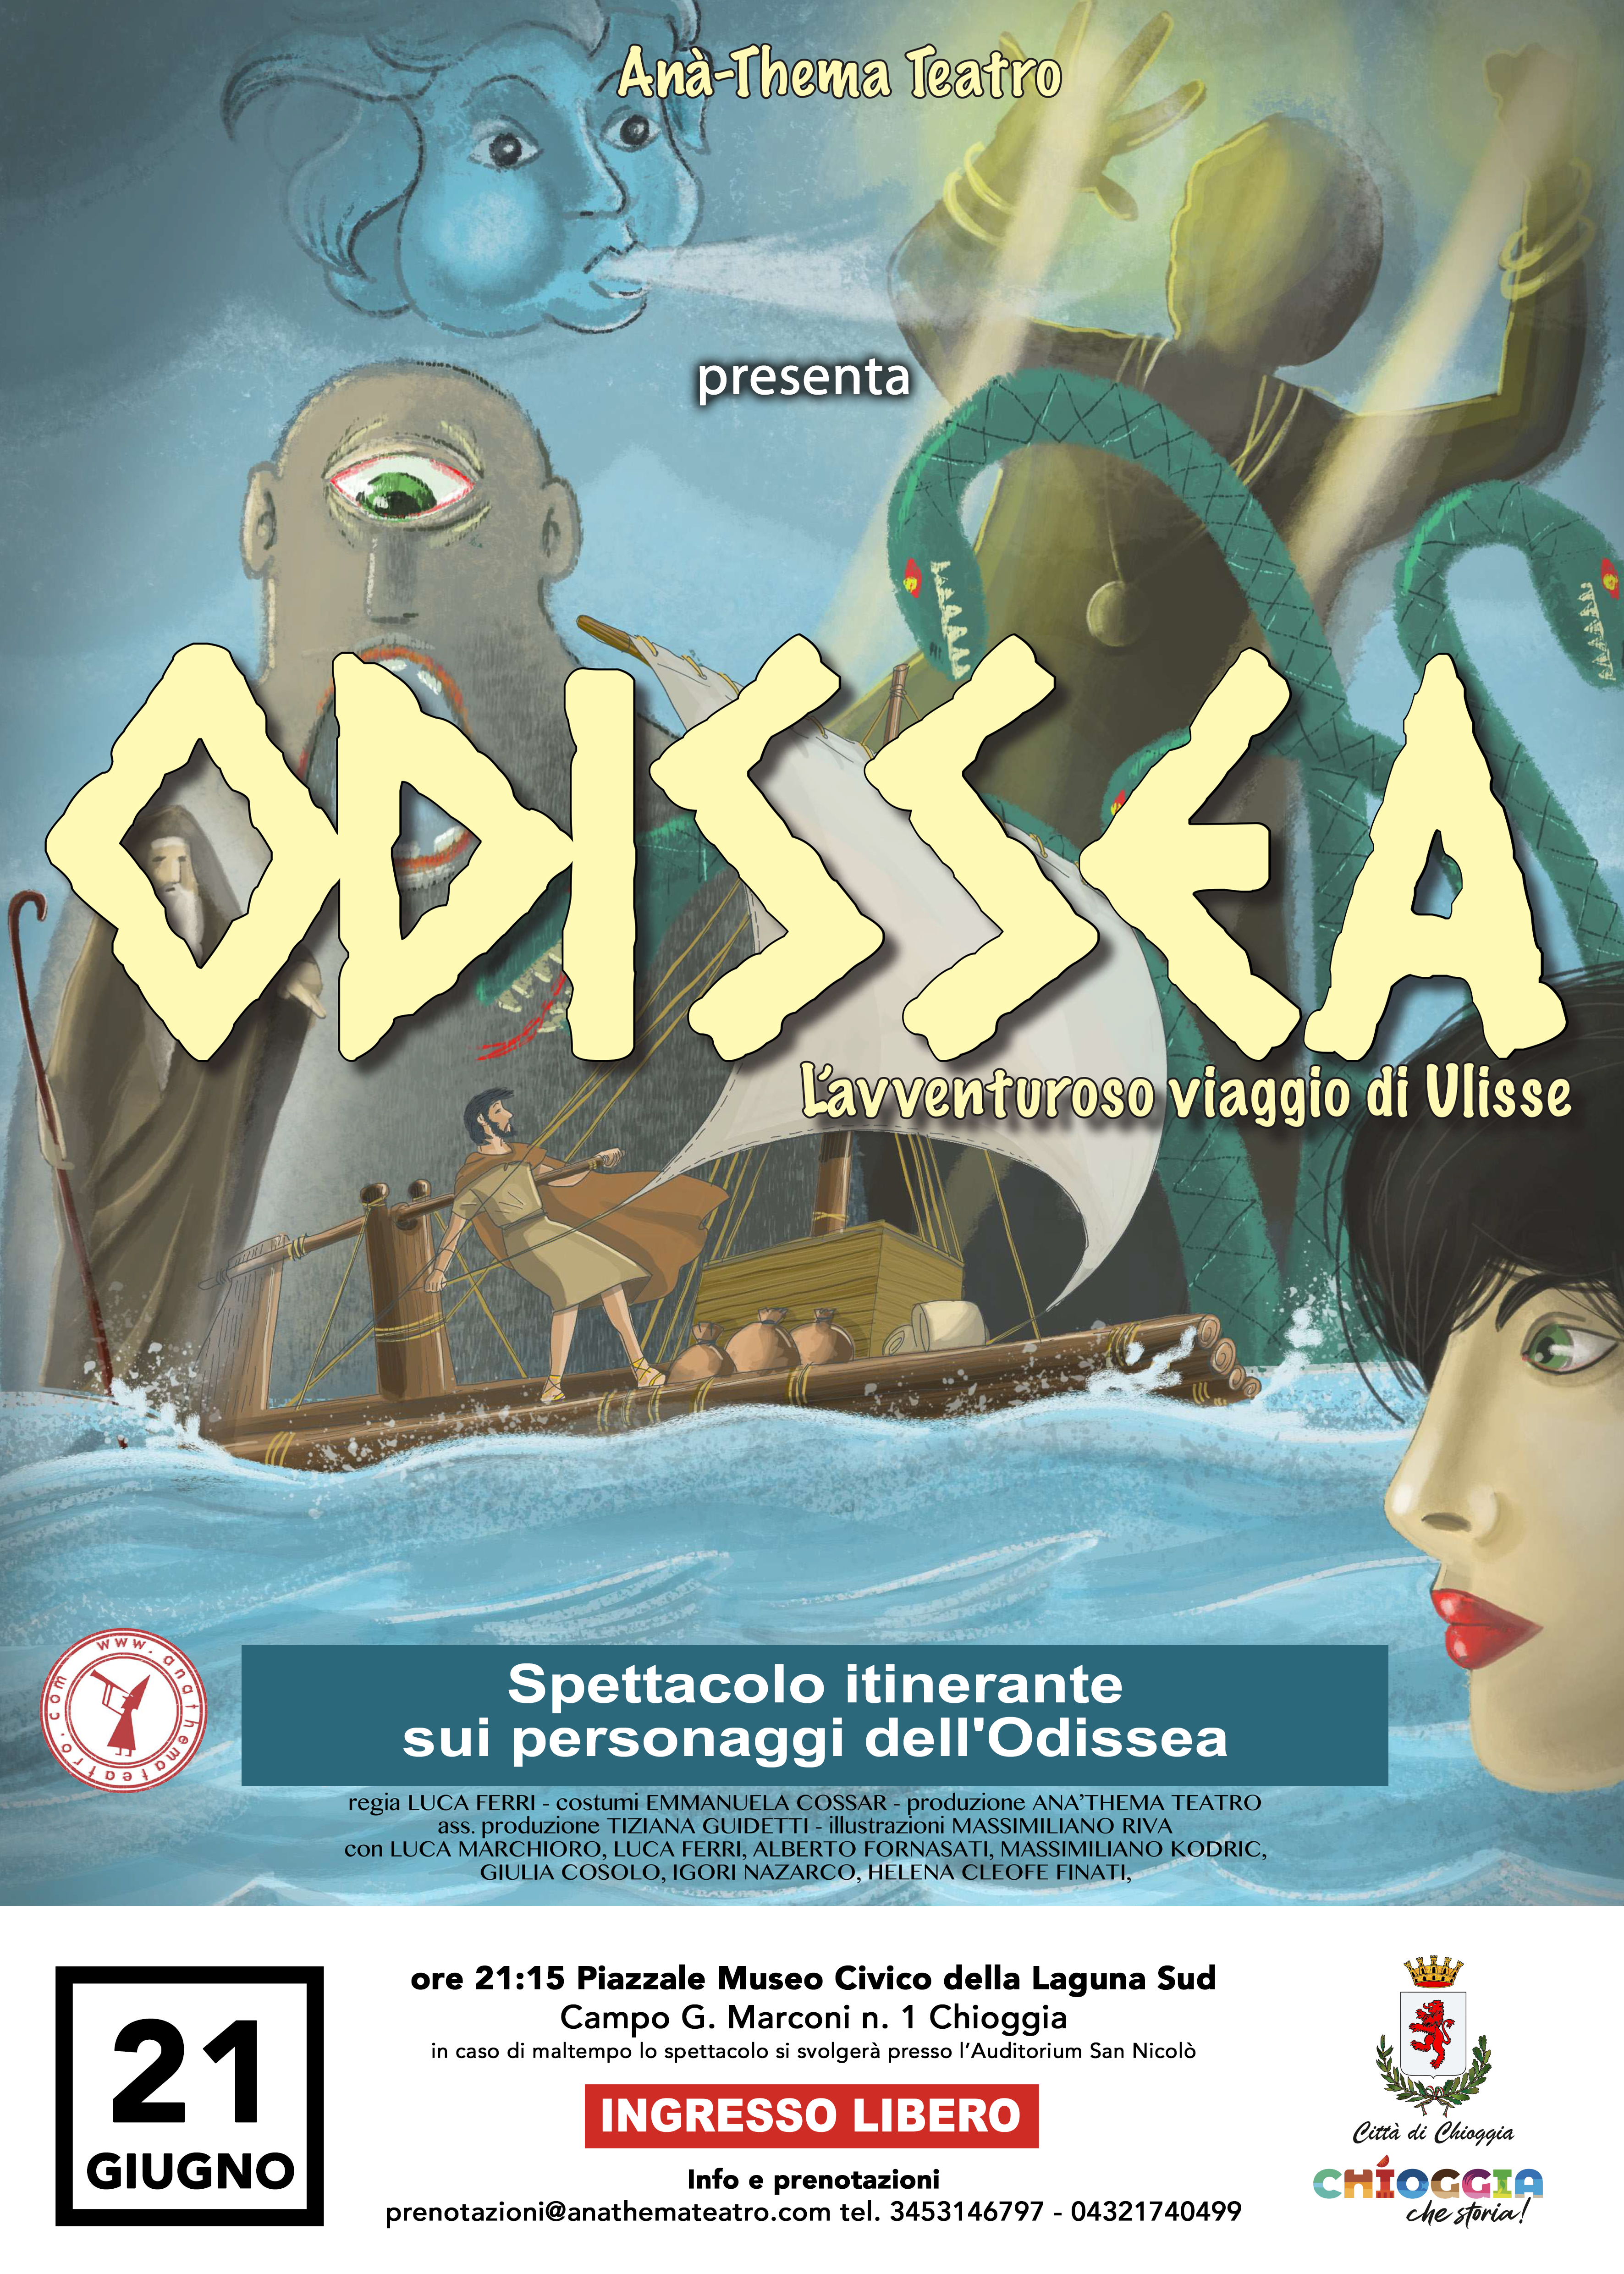 ODISSEA - L'AVVENTUROSO VIAGGIO DI ULISSE